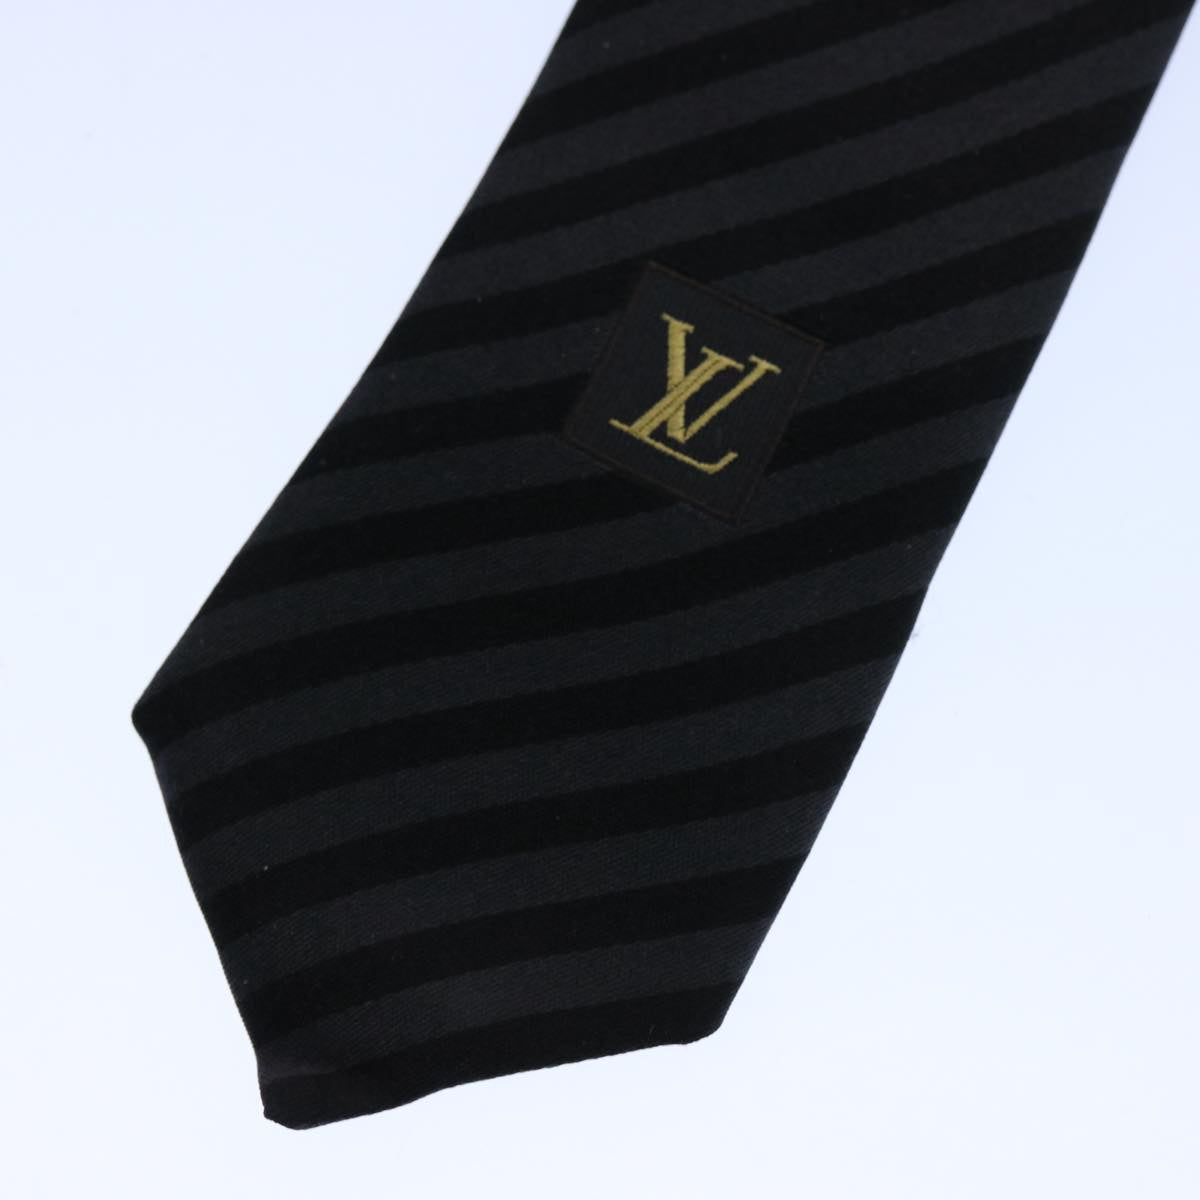 LOUIS VUITTON Necktie Silk Gray Black LV Auth 61940